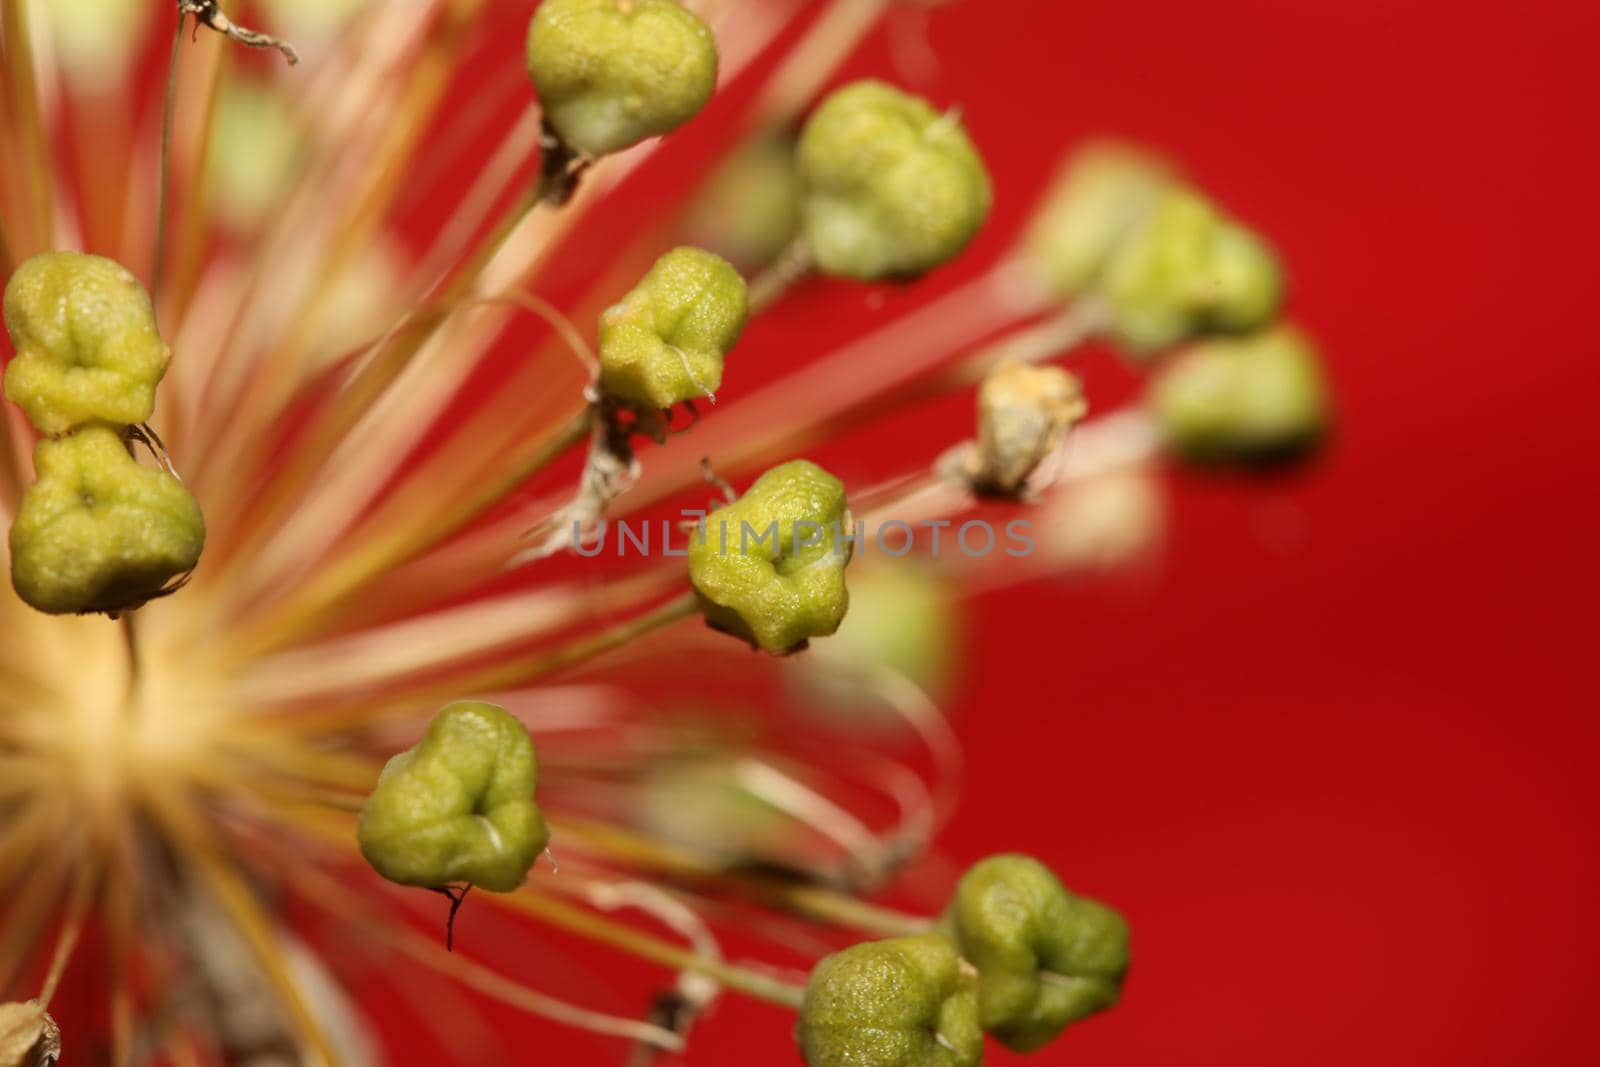 Flower blossom close up botanical background allium nigrum family amaryllidaceae high quality big size print